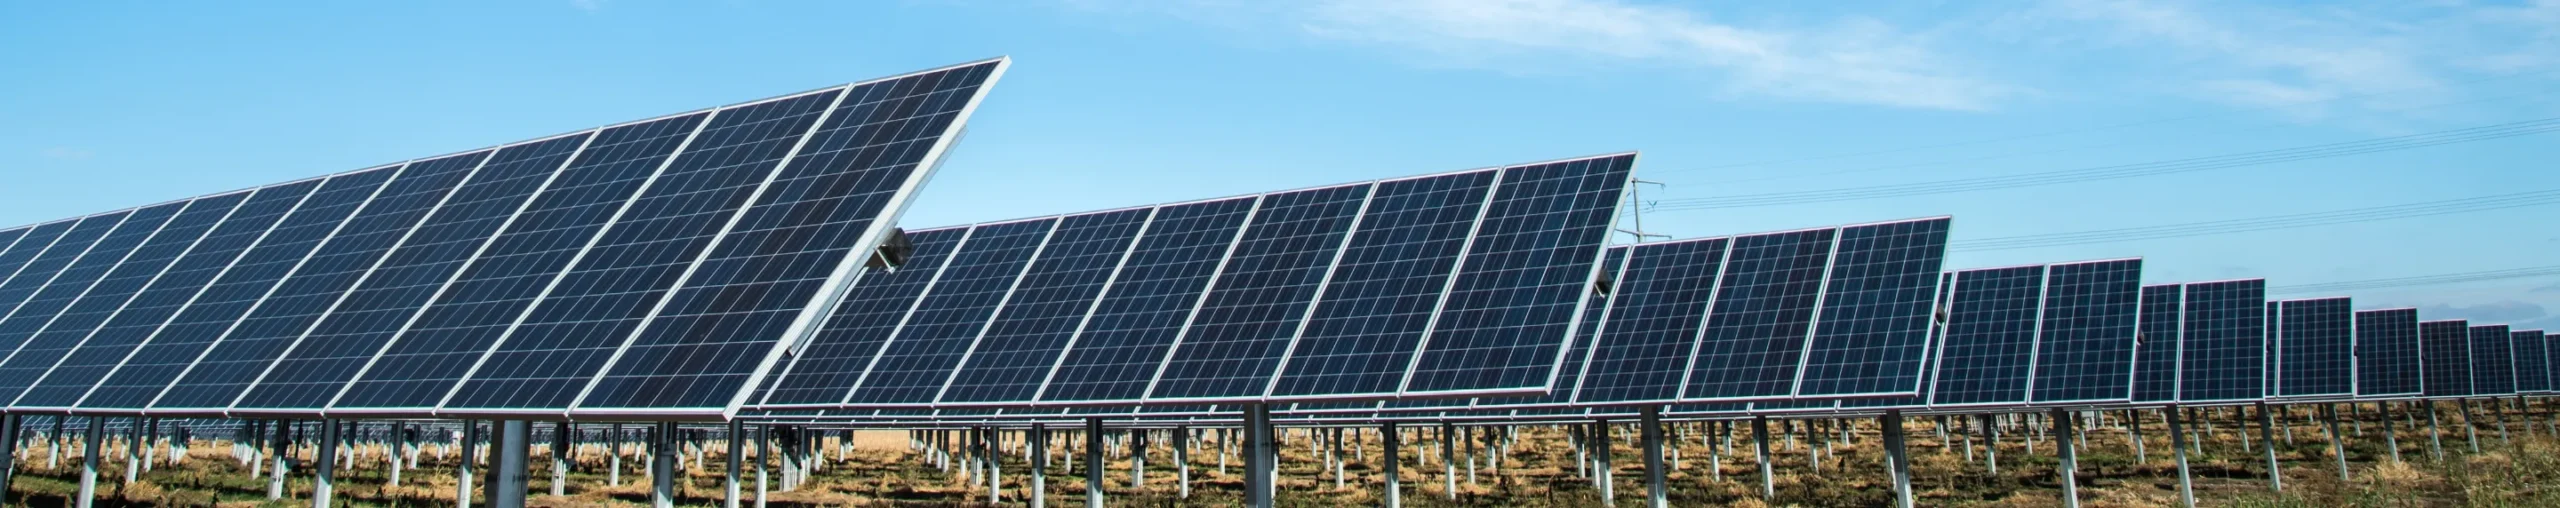 Solar panel rows in field